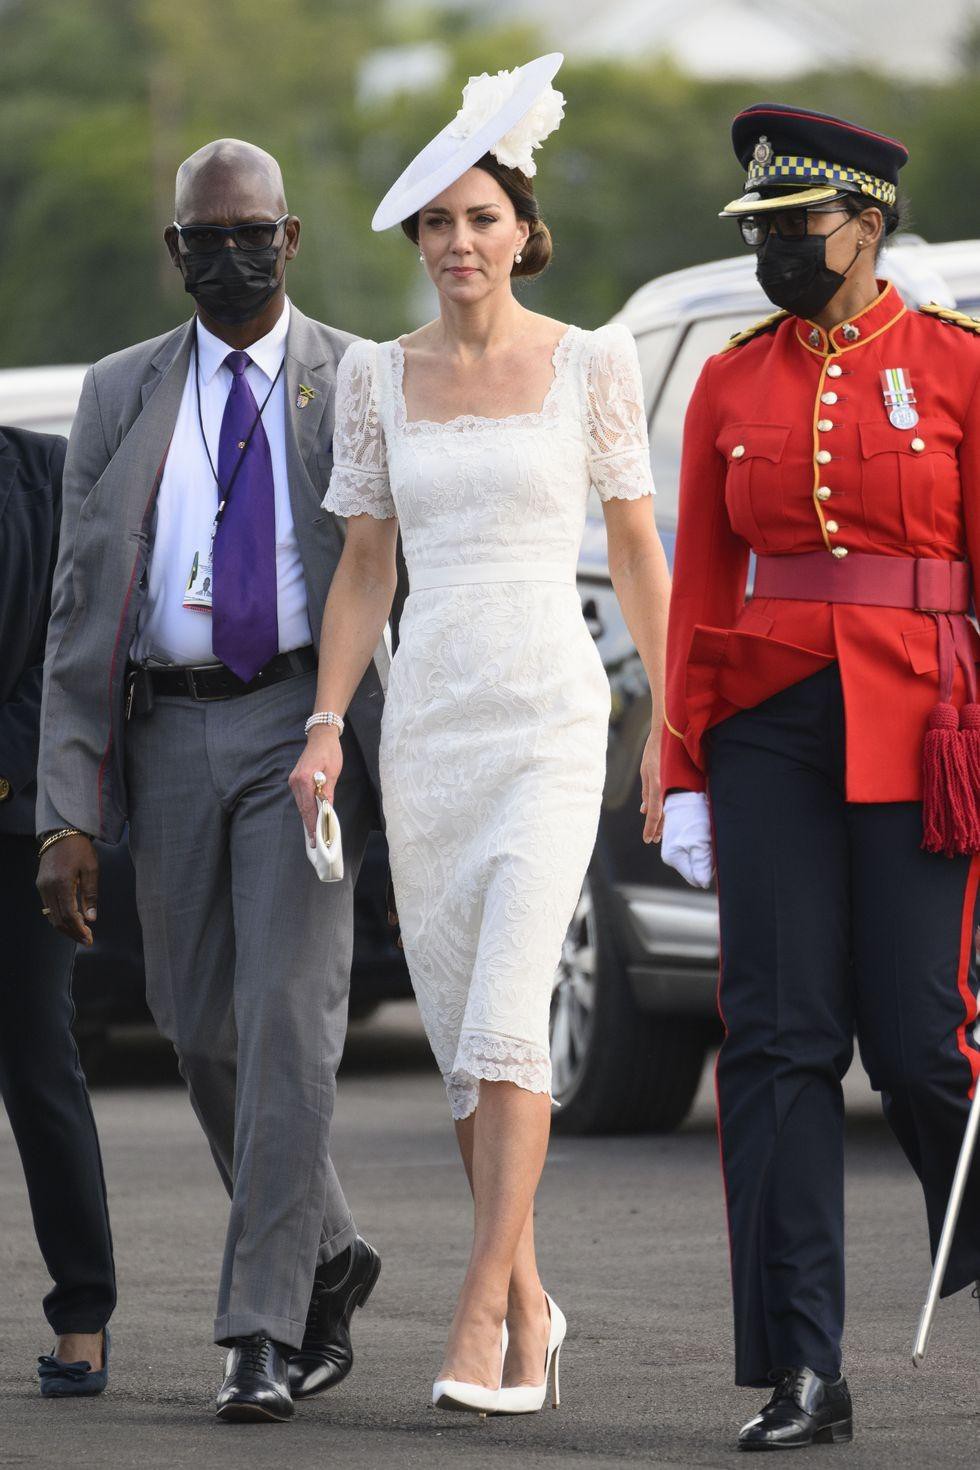 Ngắm những trang phục đẹp thanh lịch của 'Biểu tượng thời trang Hoàng gia' - Công nương Kate - Ảnh 13.